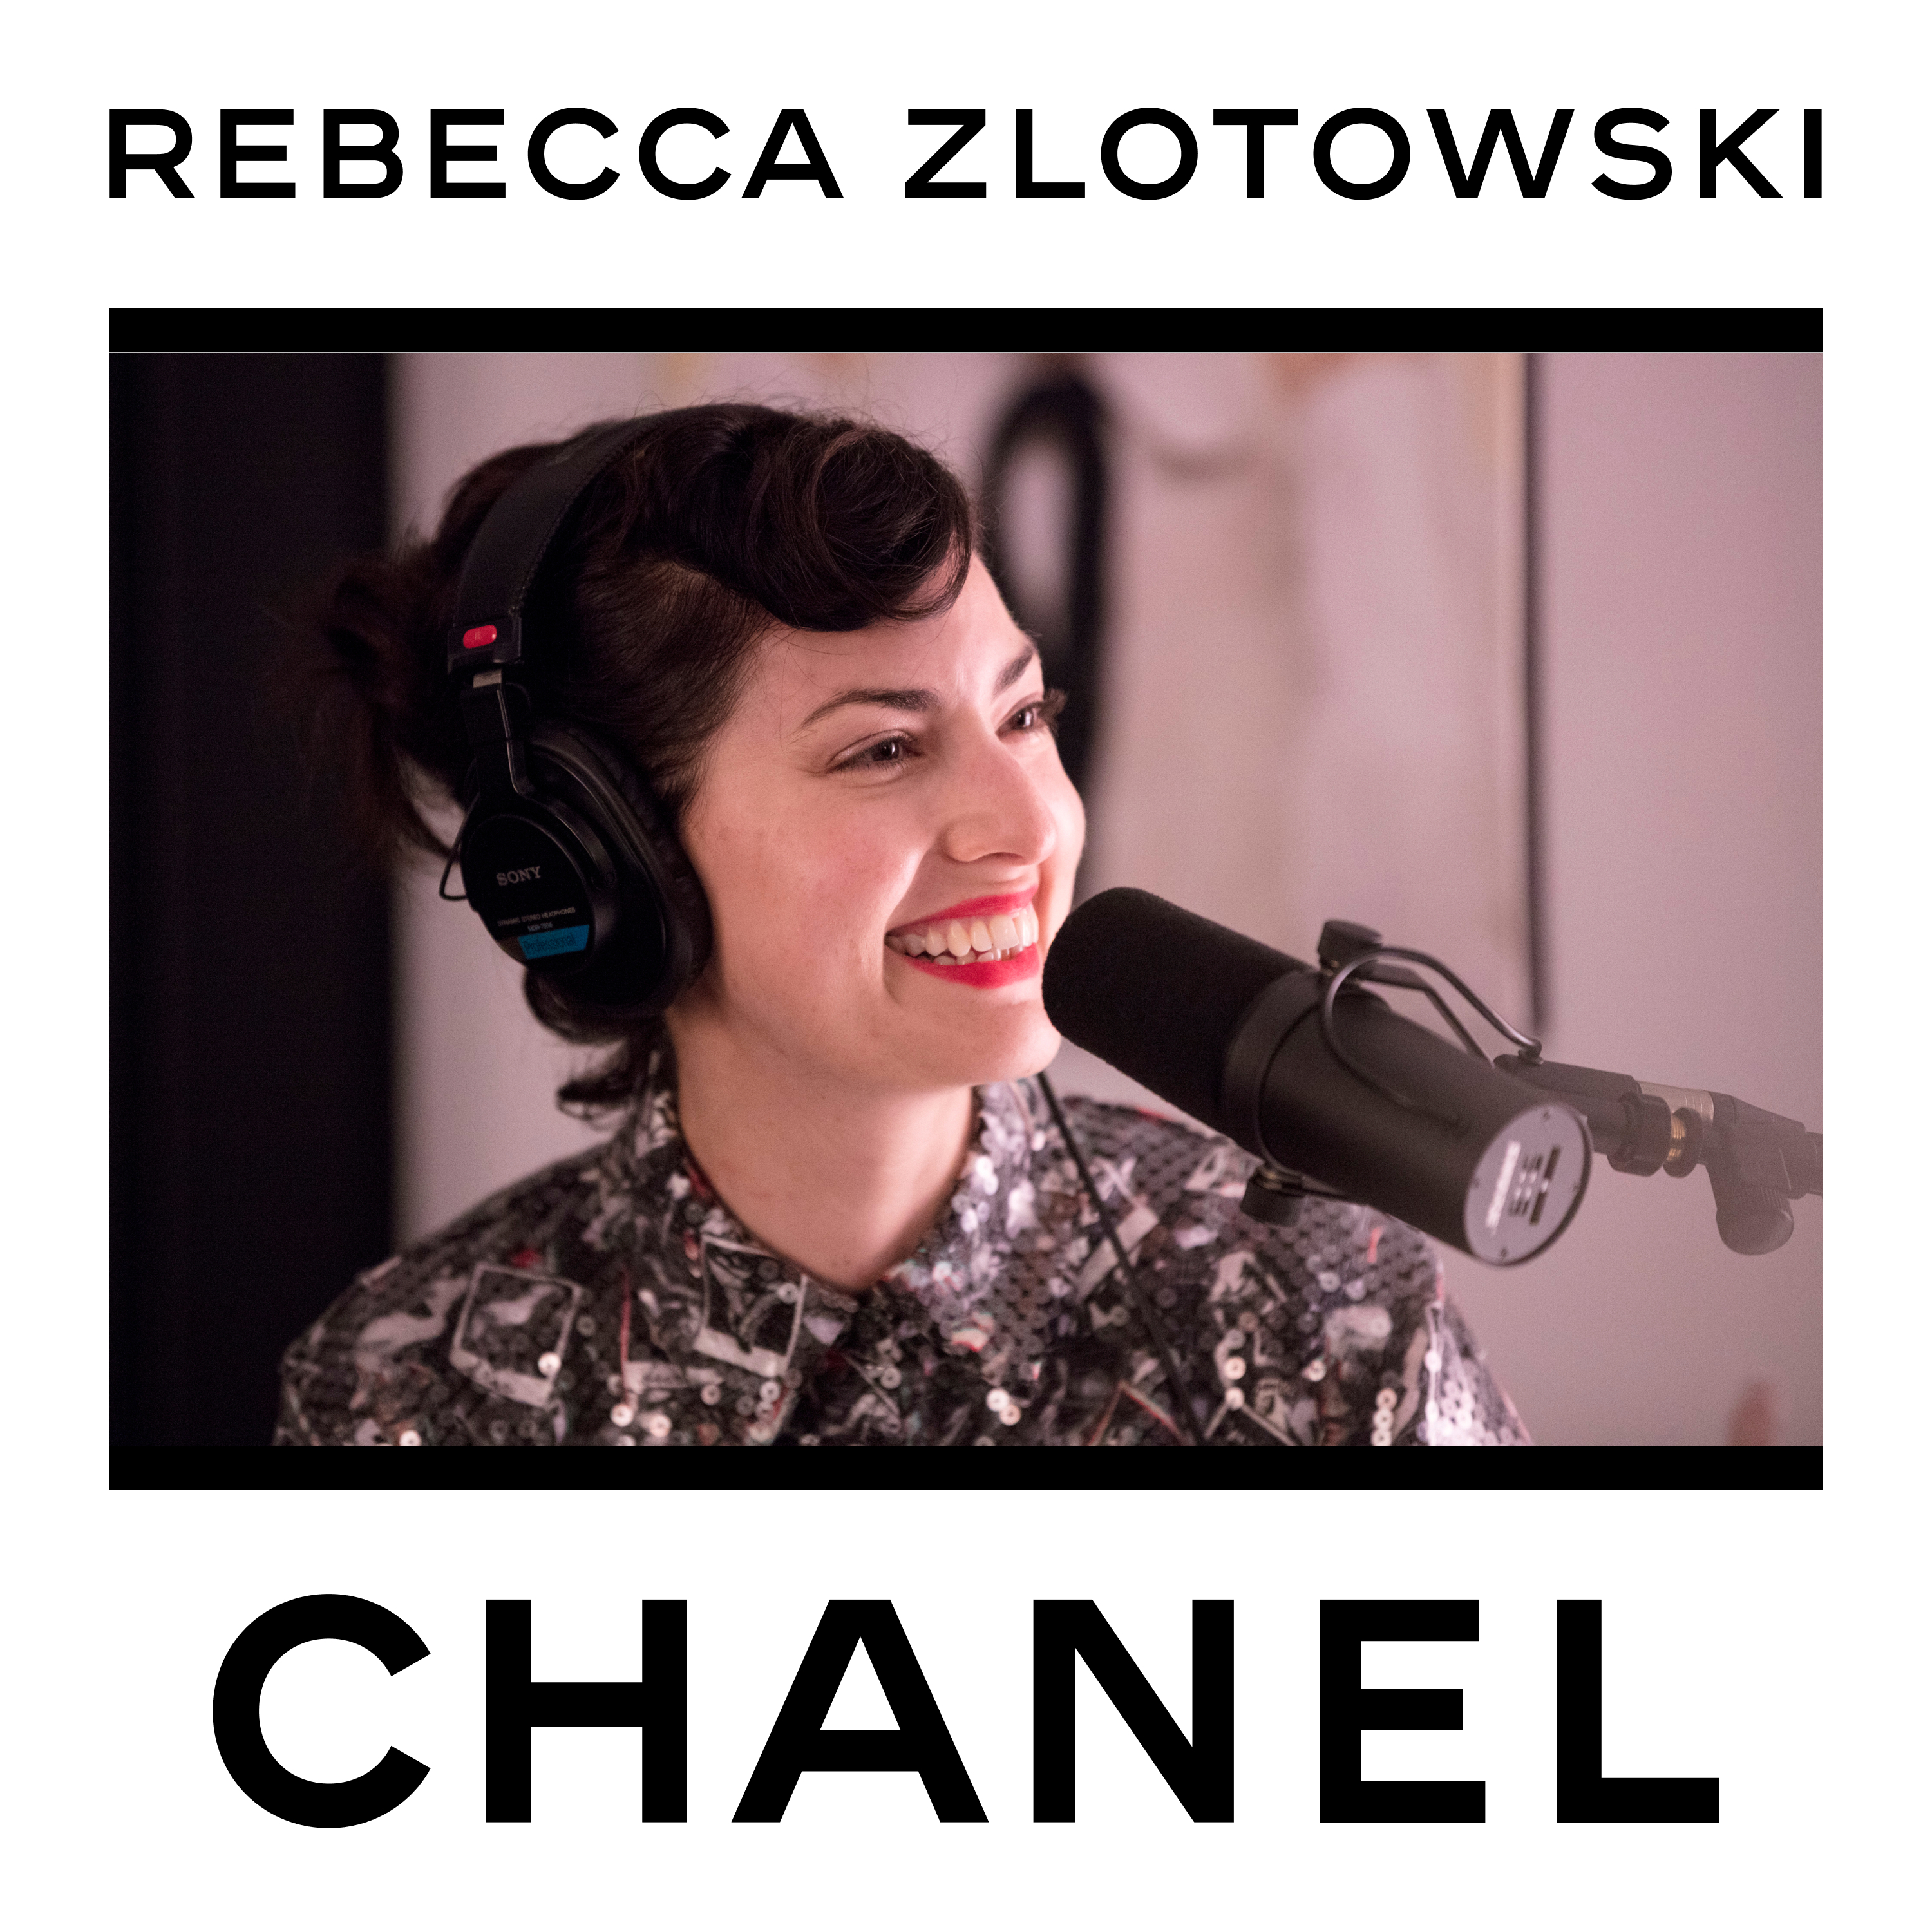 Rebecca Zlotowski — CHANEL in Cannes